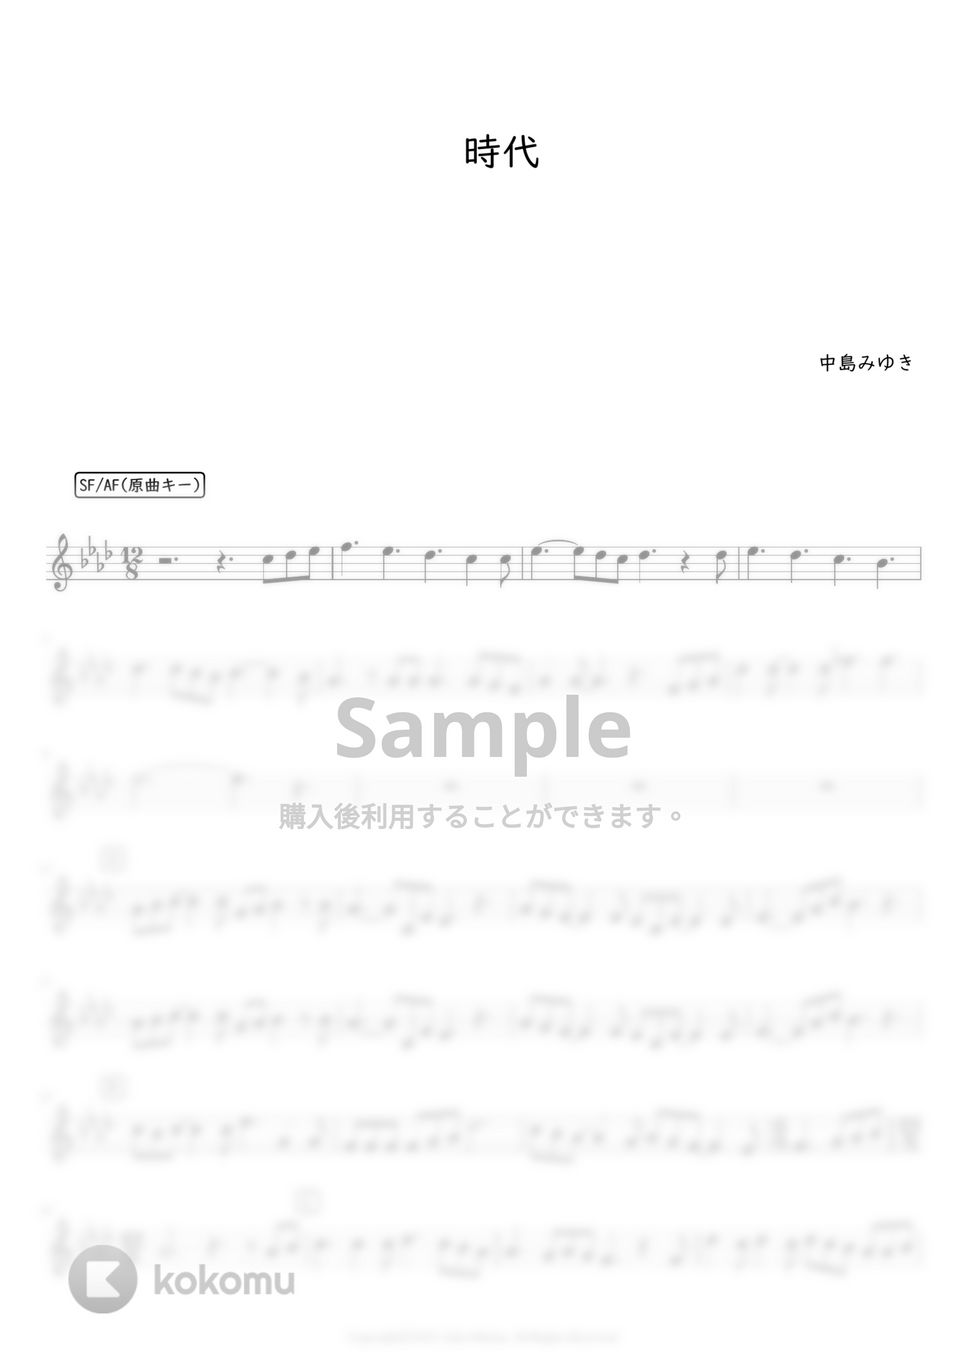 中島みゆき - 時代 (オカリナF管用メロディー譜(原曲キー)) by もりたあいか